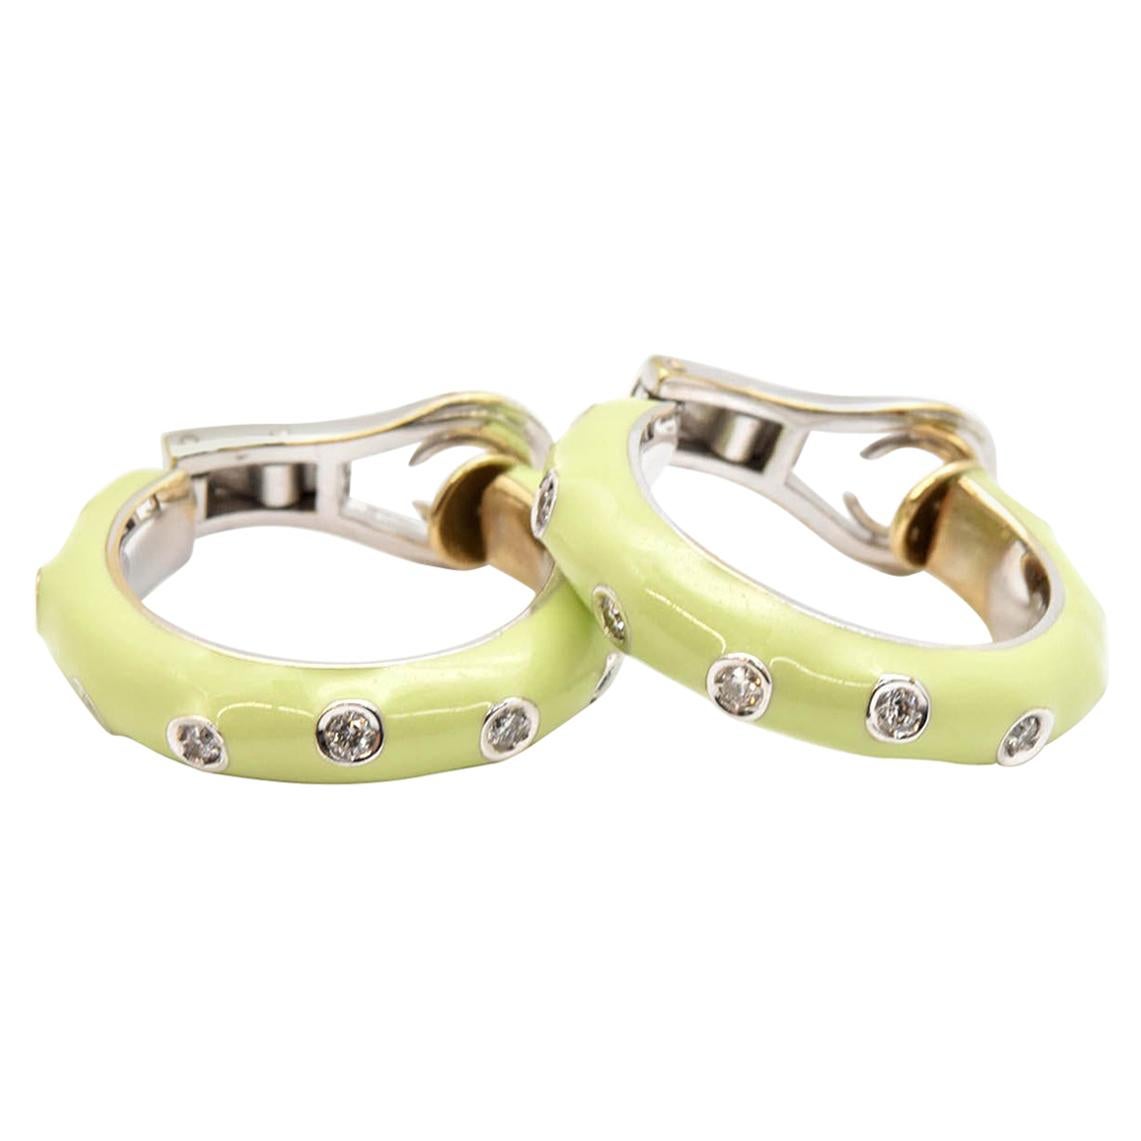 Andreoli 18 Karat White Gold, Diamond and Green Enamel Hoop Earrings